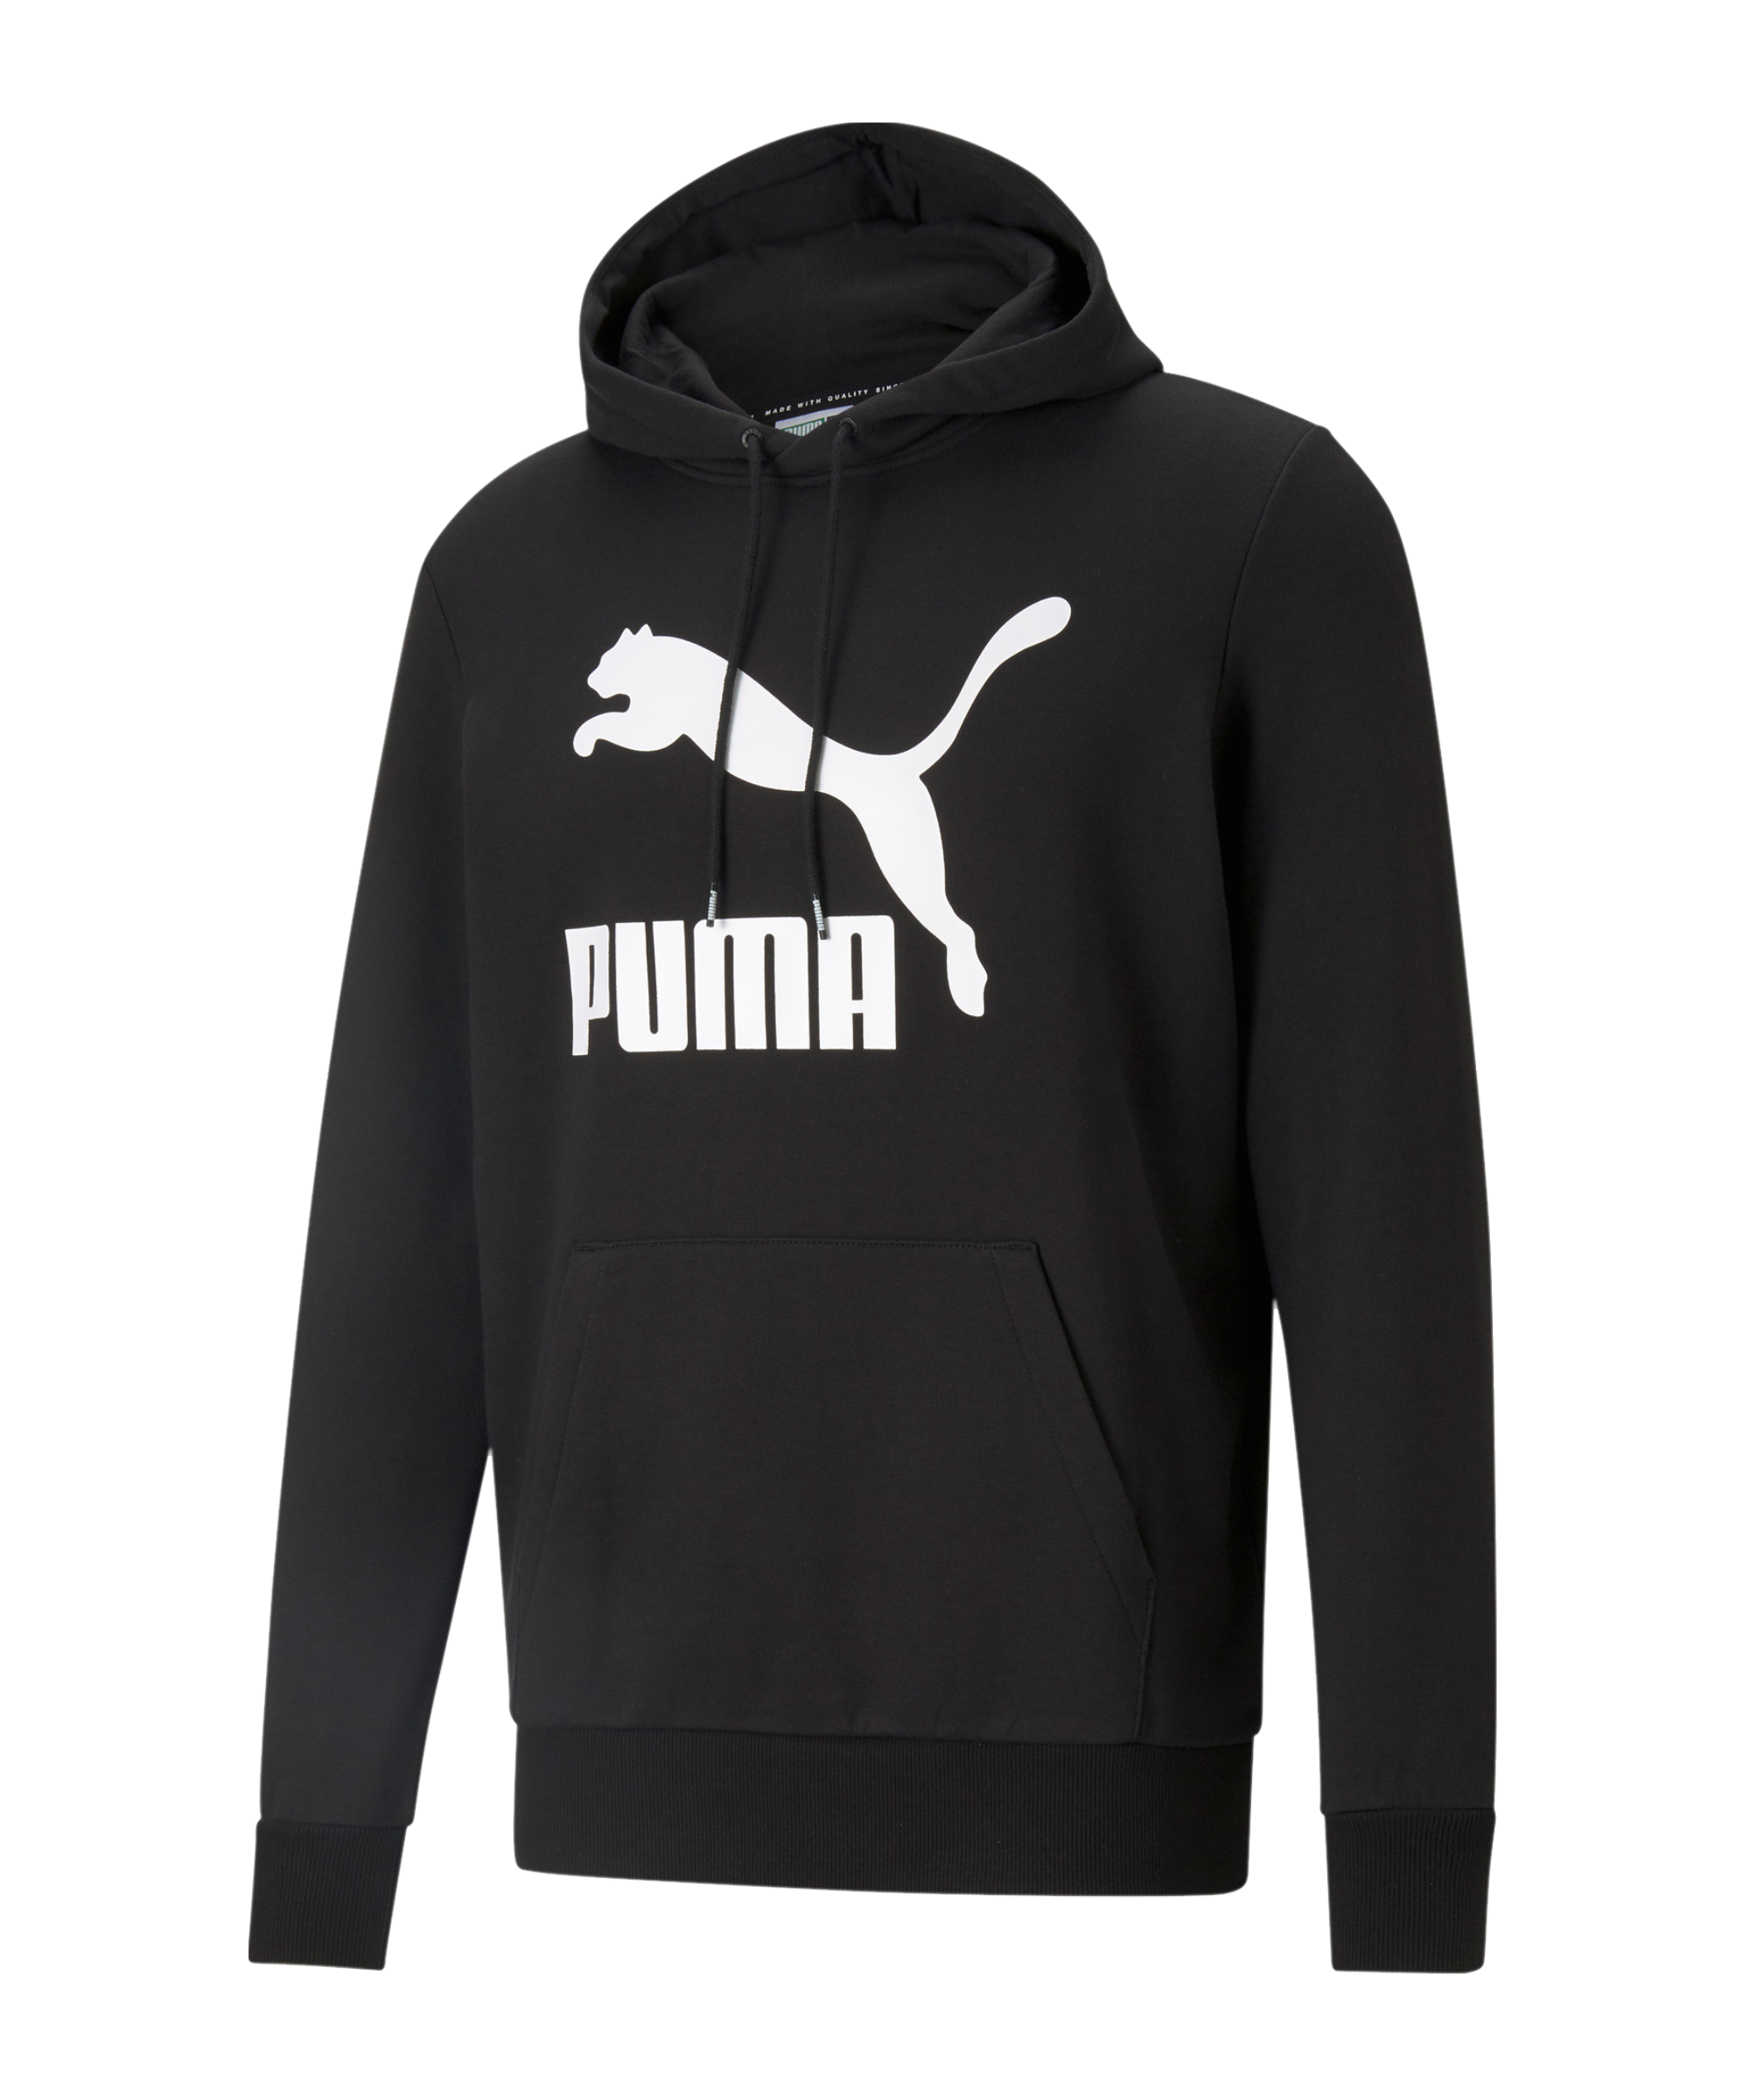 Pánská mikina s kapucí Puma Classics